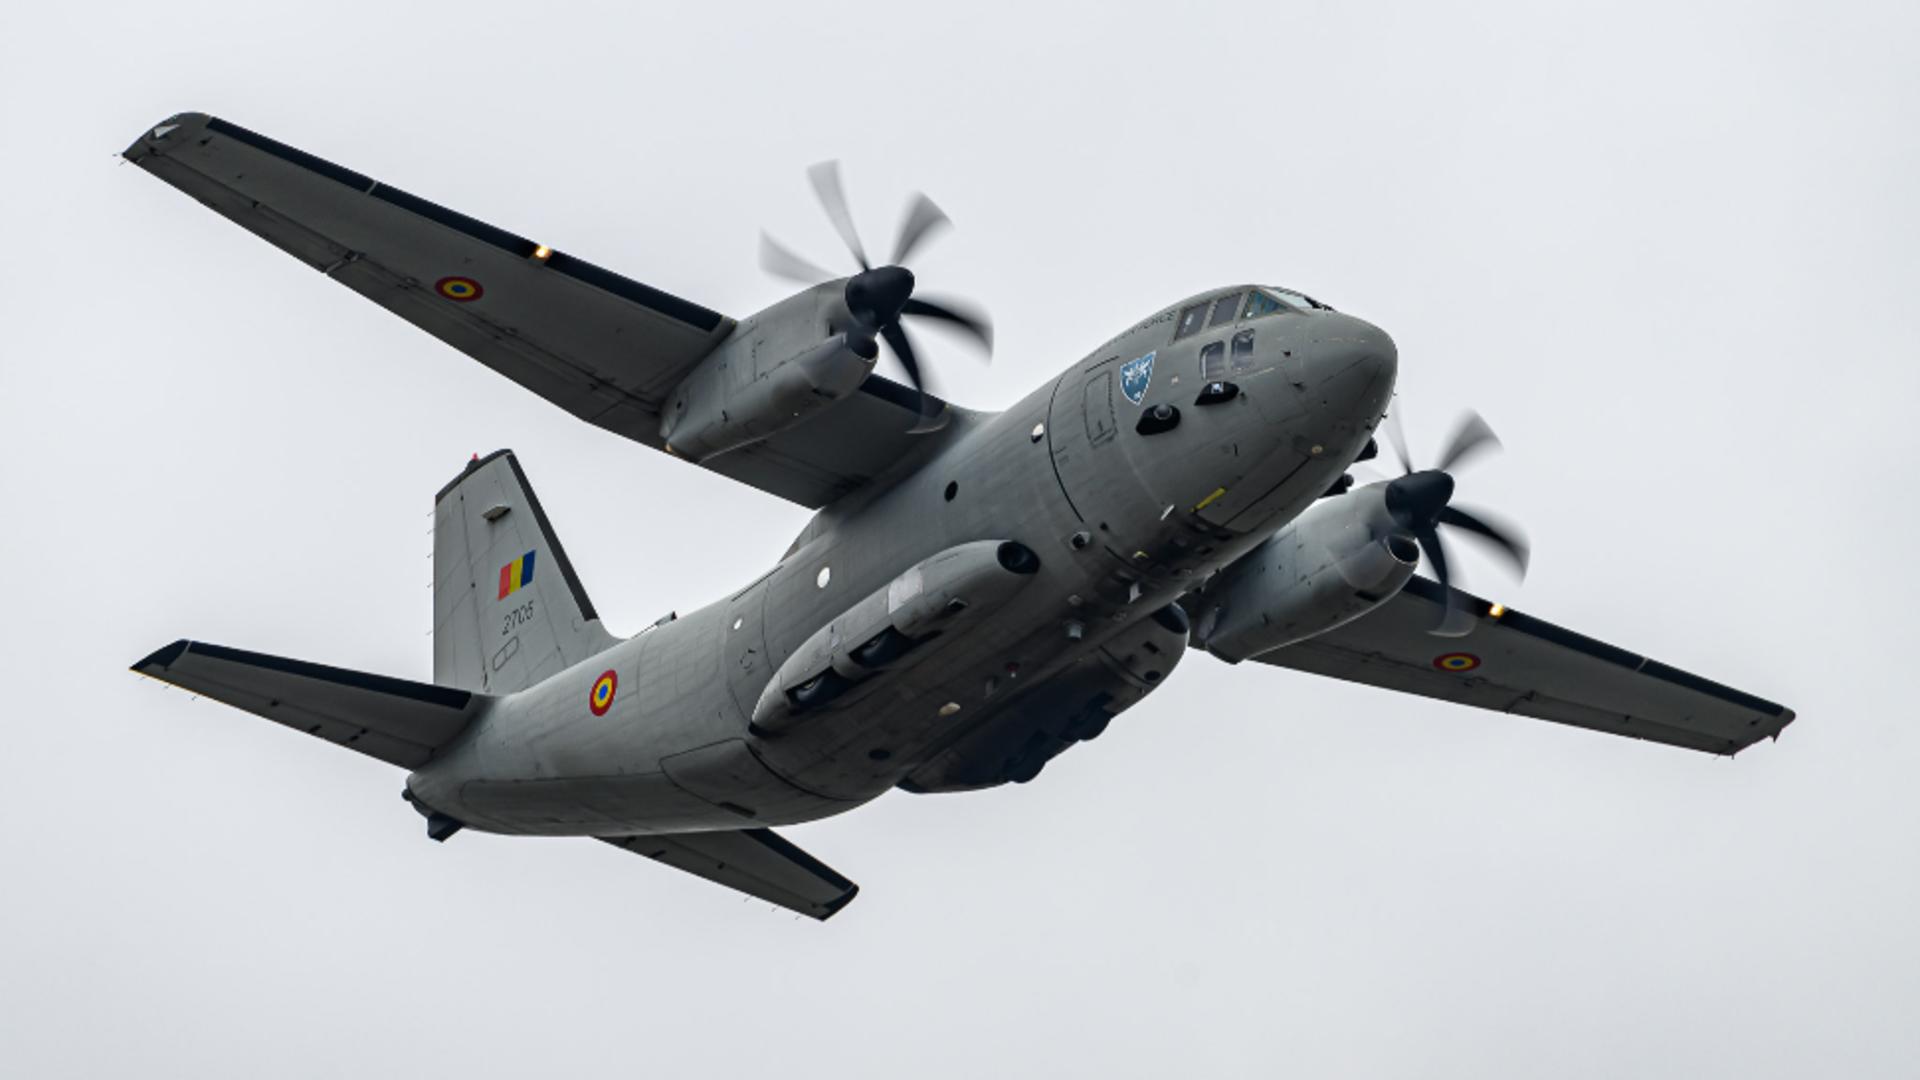 Aeronave Hercules şi Spartan vor executa zboruri la înălţimi mici - Forțele Aeriene Române anunță antrenamente adecvate condiţiilor de luptă actuale